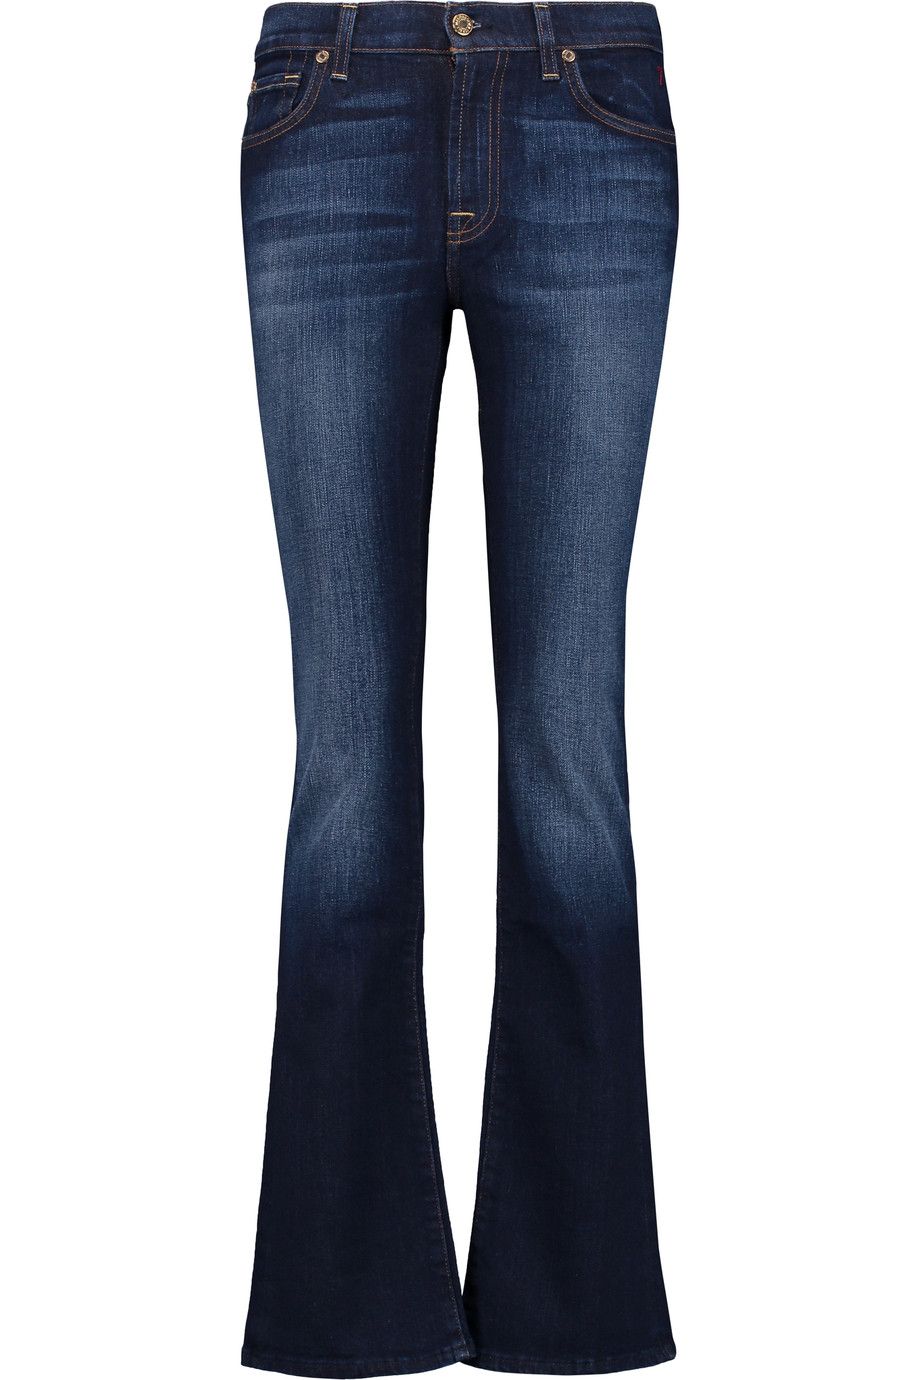 jeans quali scegliere per essere sexy